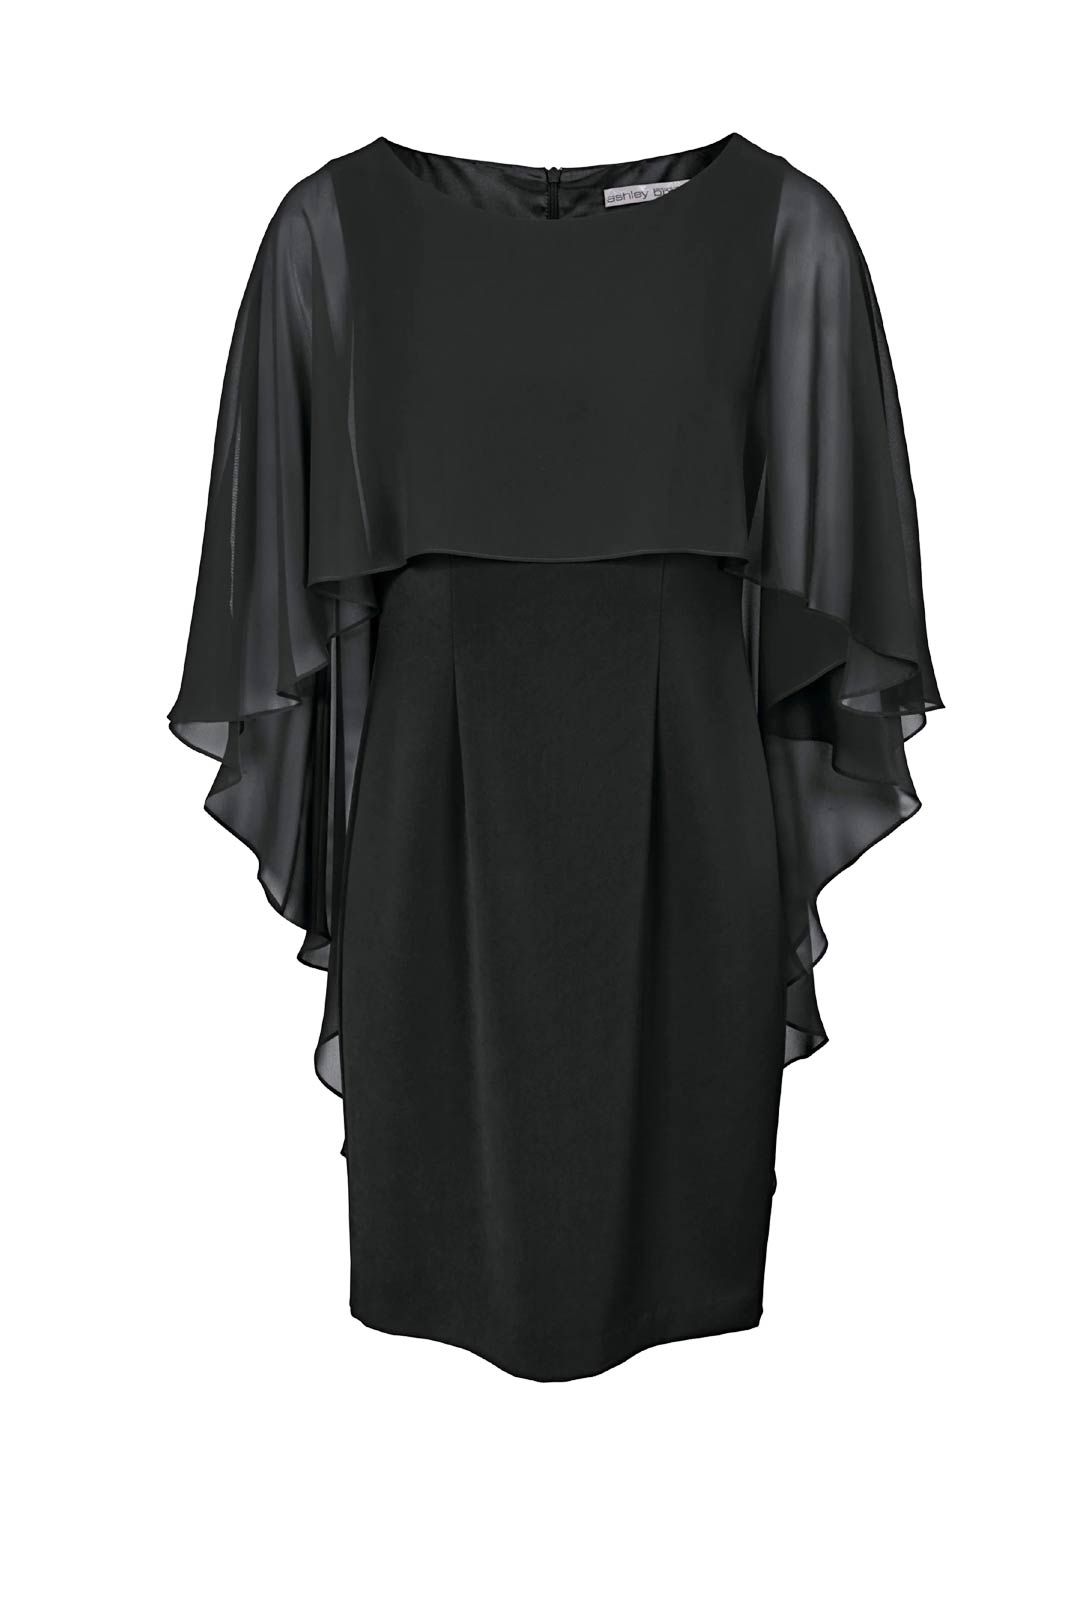 HEINE Damen Kleid mit Chiffonüberwurf, schwarz